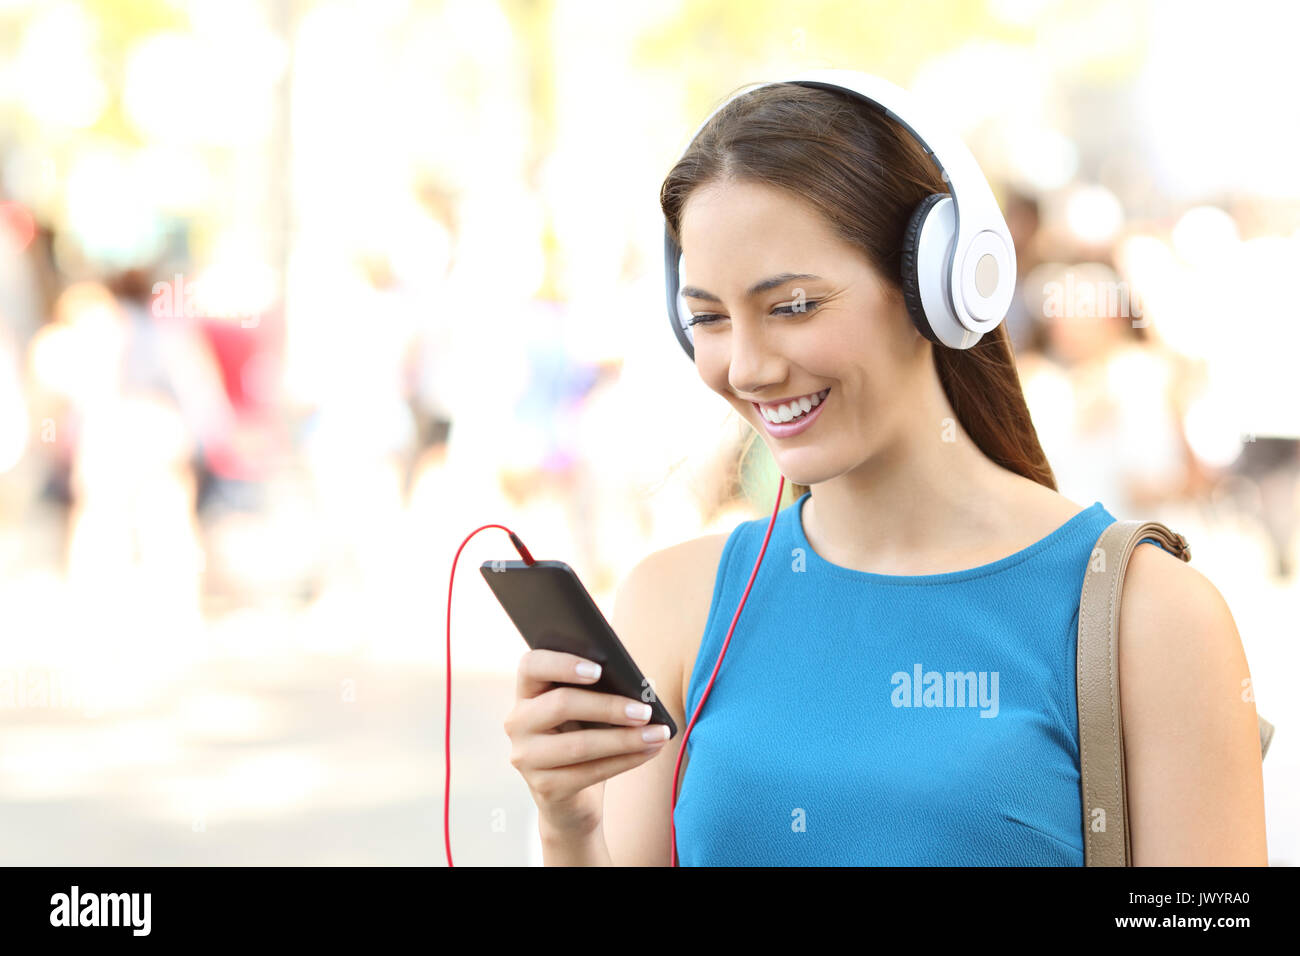 Porträt eines Mädchens Musik hören, Kopfhörer tragen und gehen auf die Straße Stockfoto